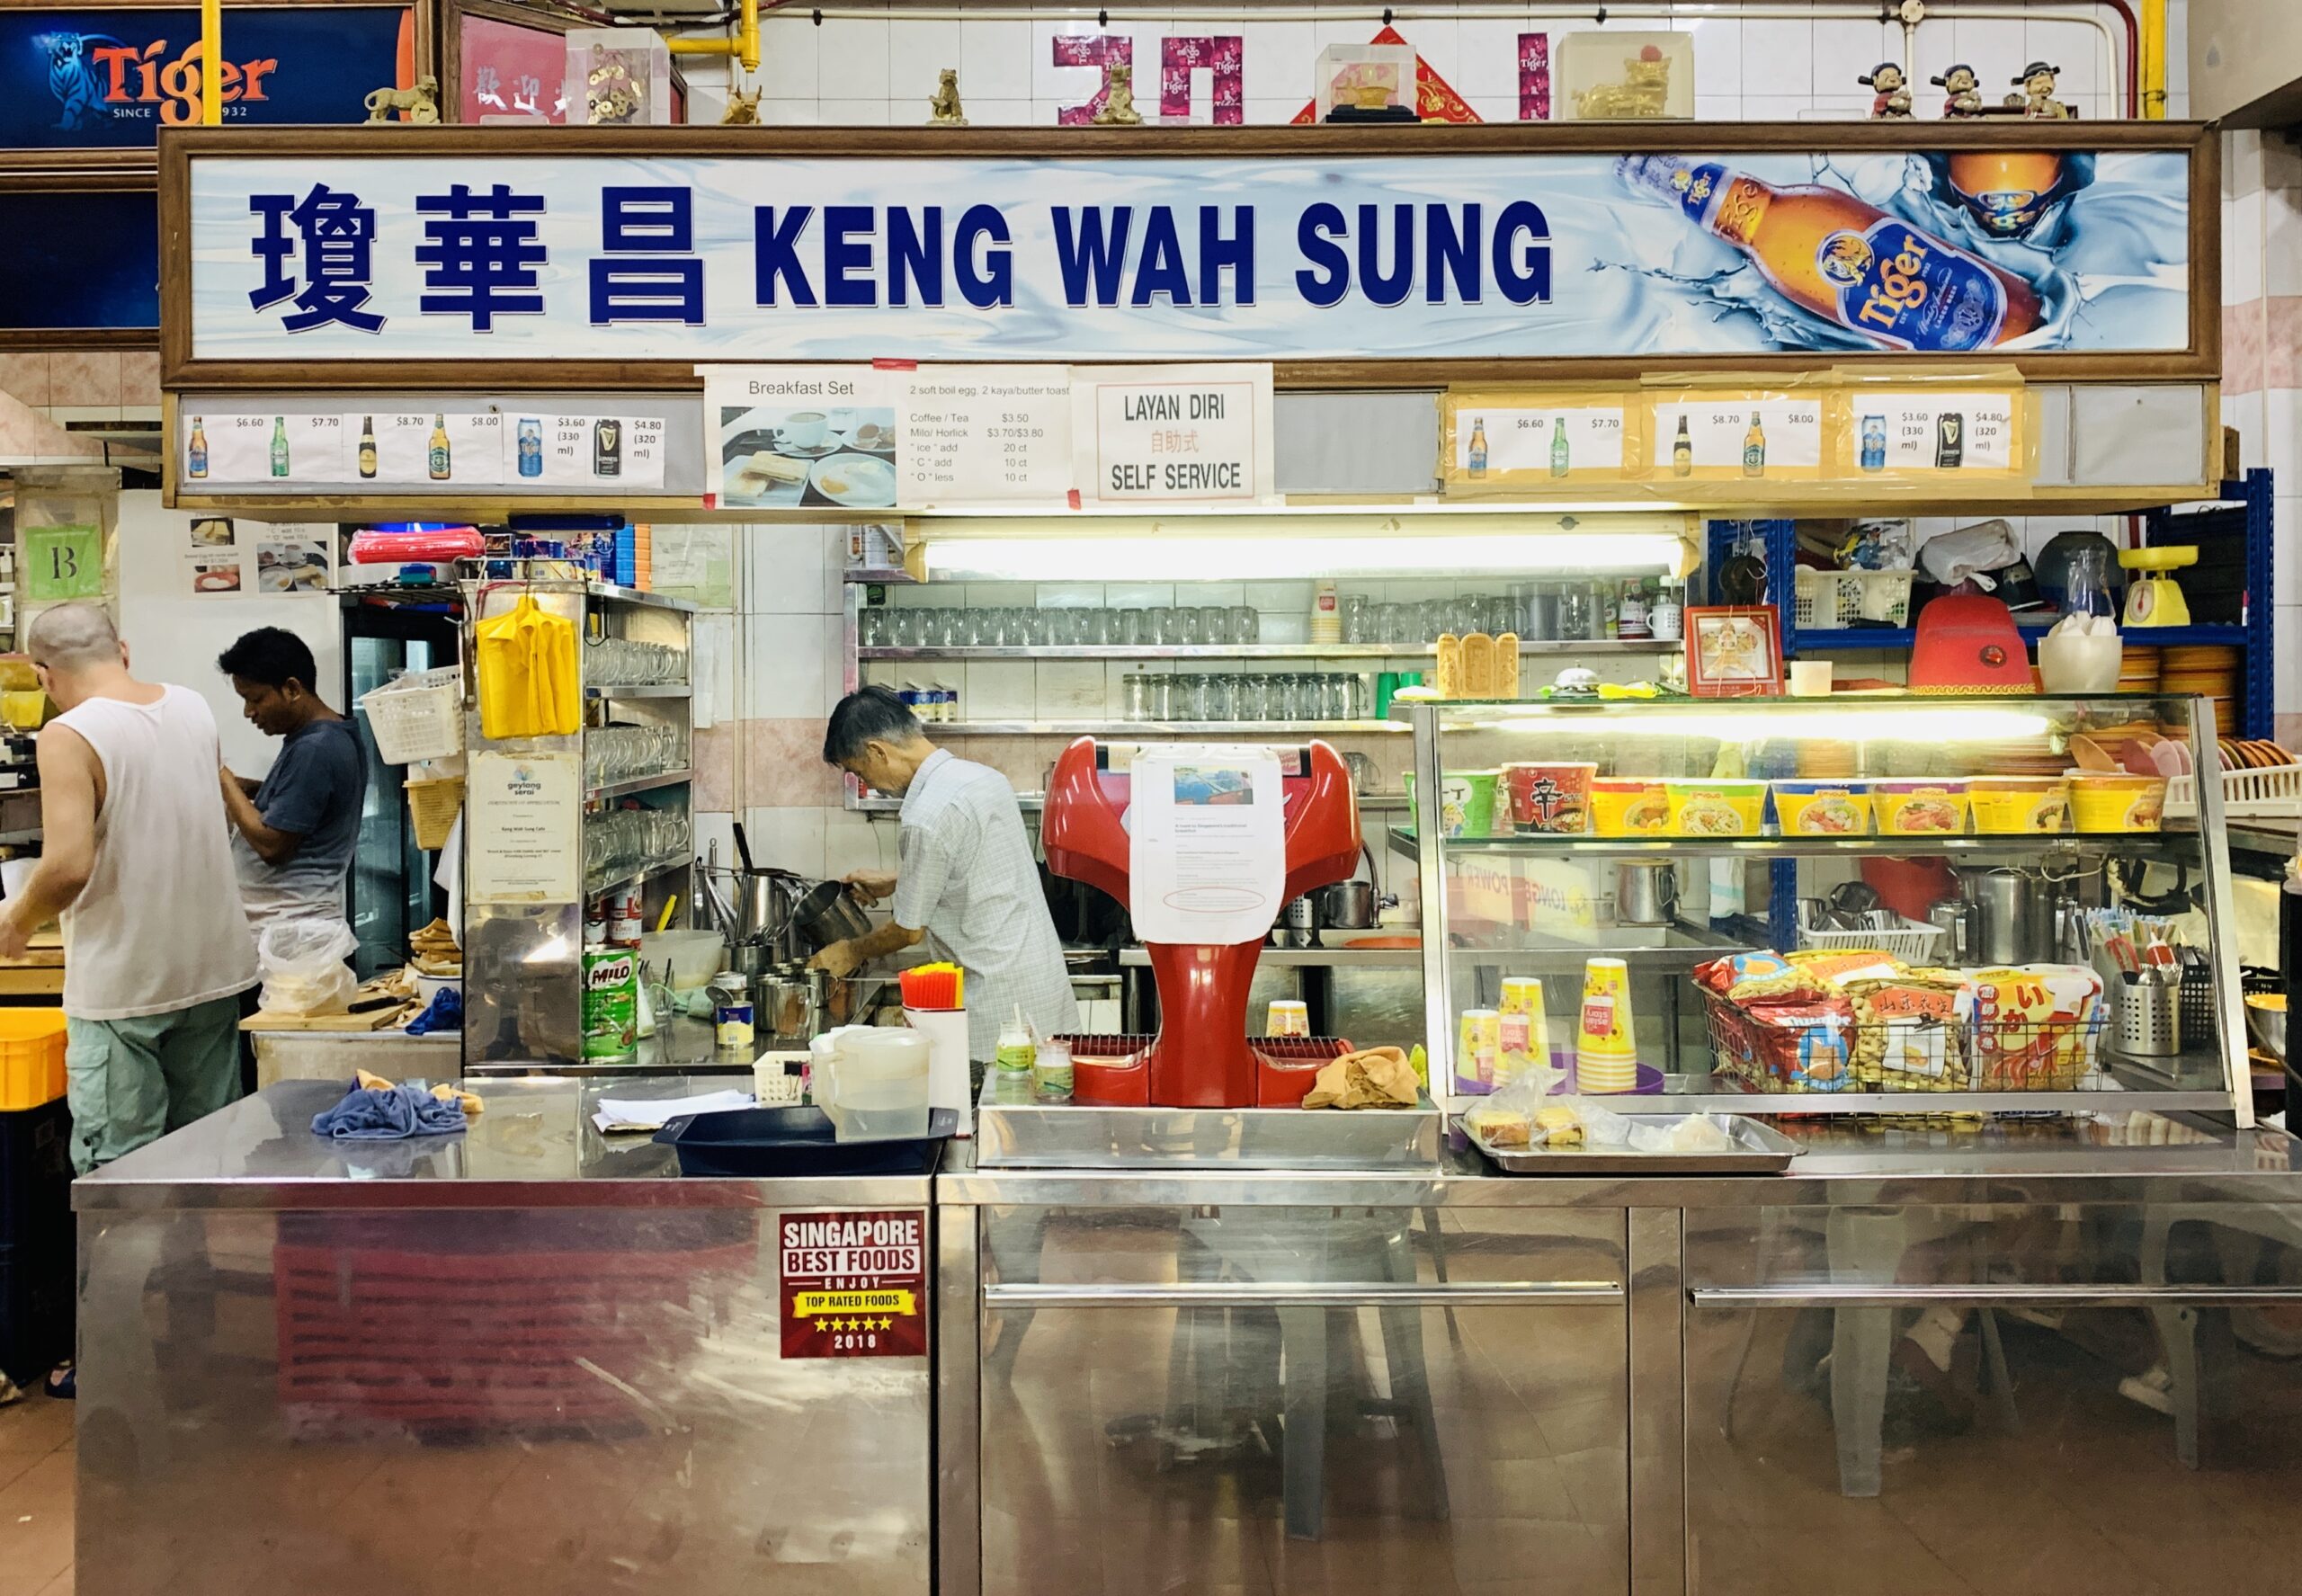 Keng Wah Sung - Stall Front